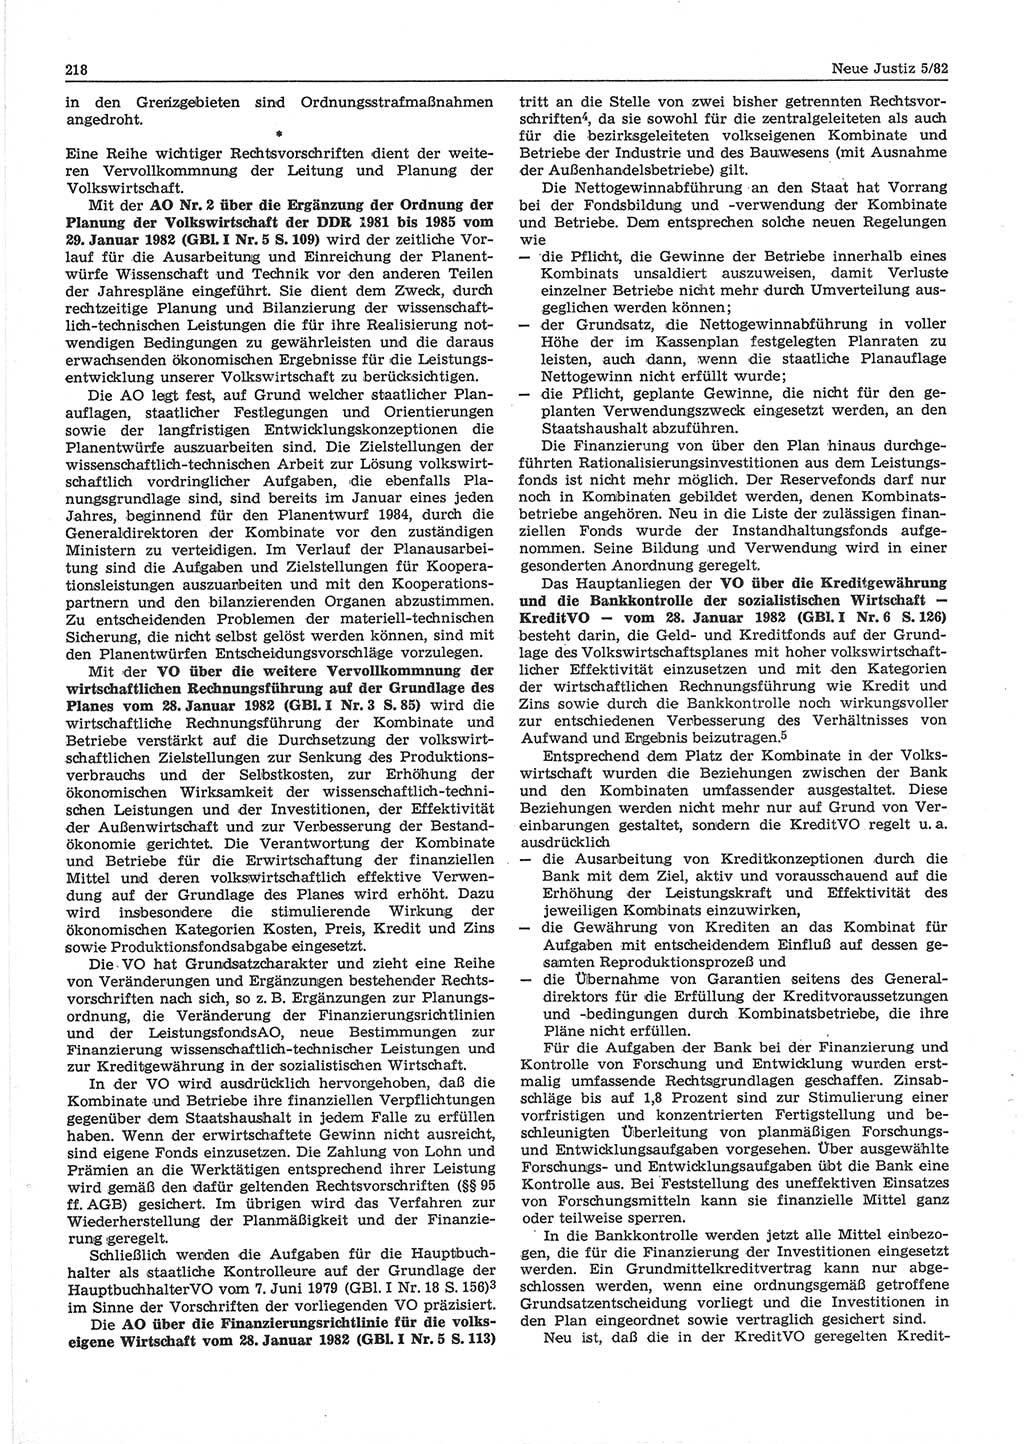 Neue Justiz (NJ), Zeitschrift für sozialistisches Recht und Gesetzlichkeit [Deutsche Demokratische Republik (DDR)], 36. Jahrgang 1982, Seite 218 (NJ DDR 1982, S. 218)